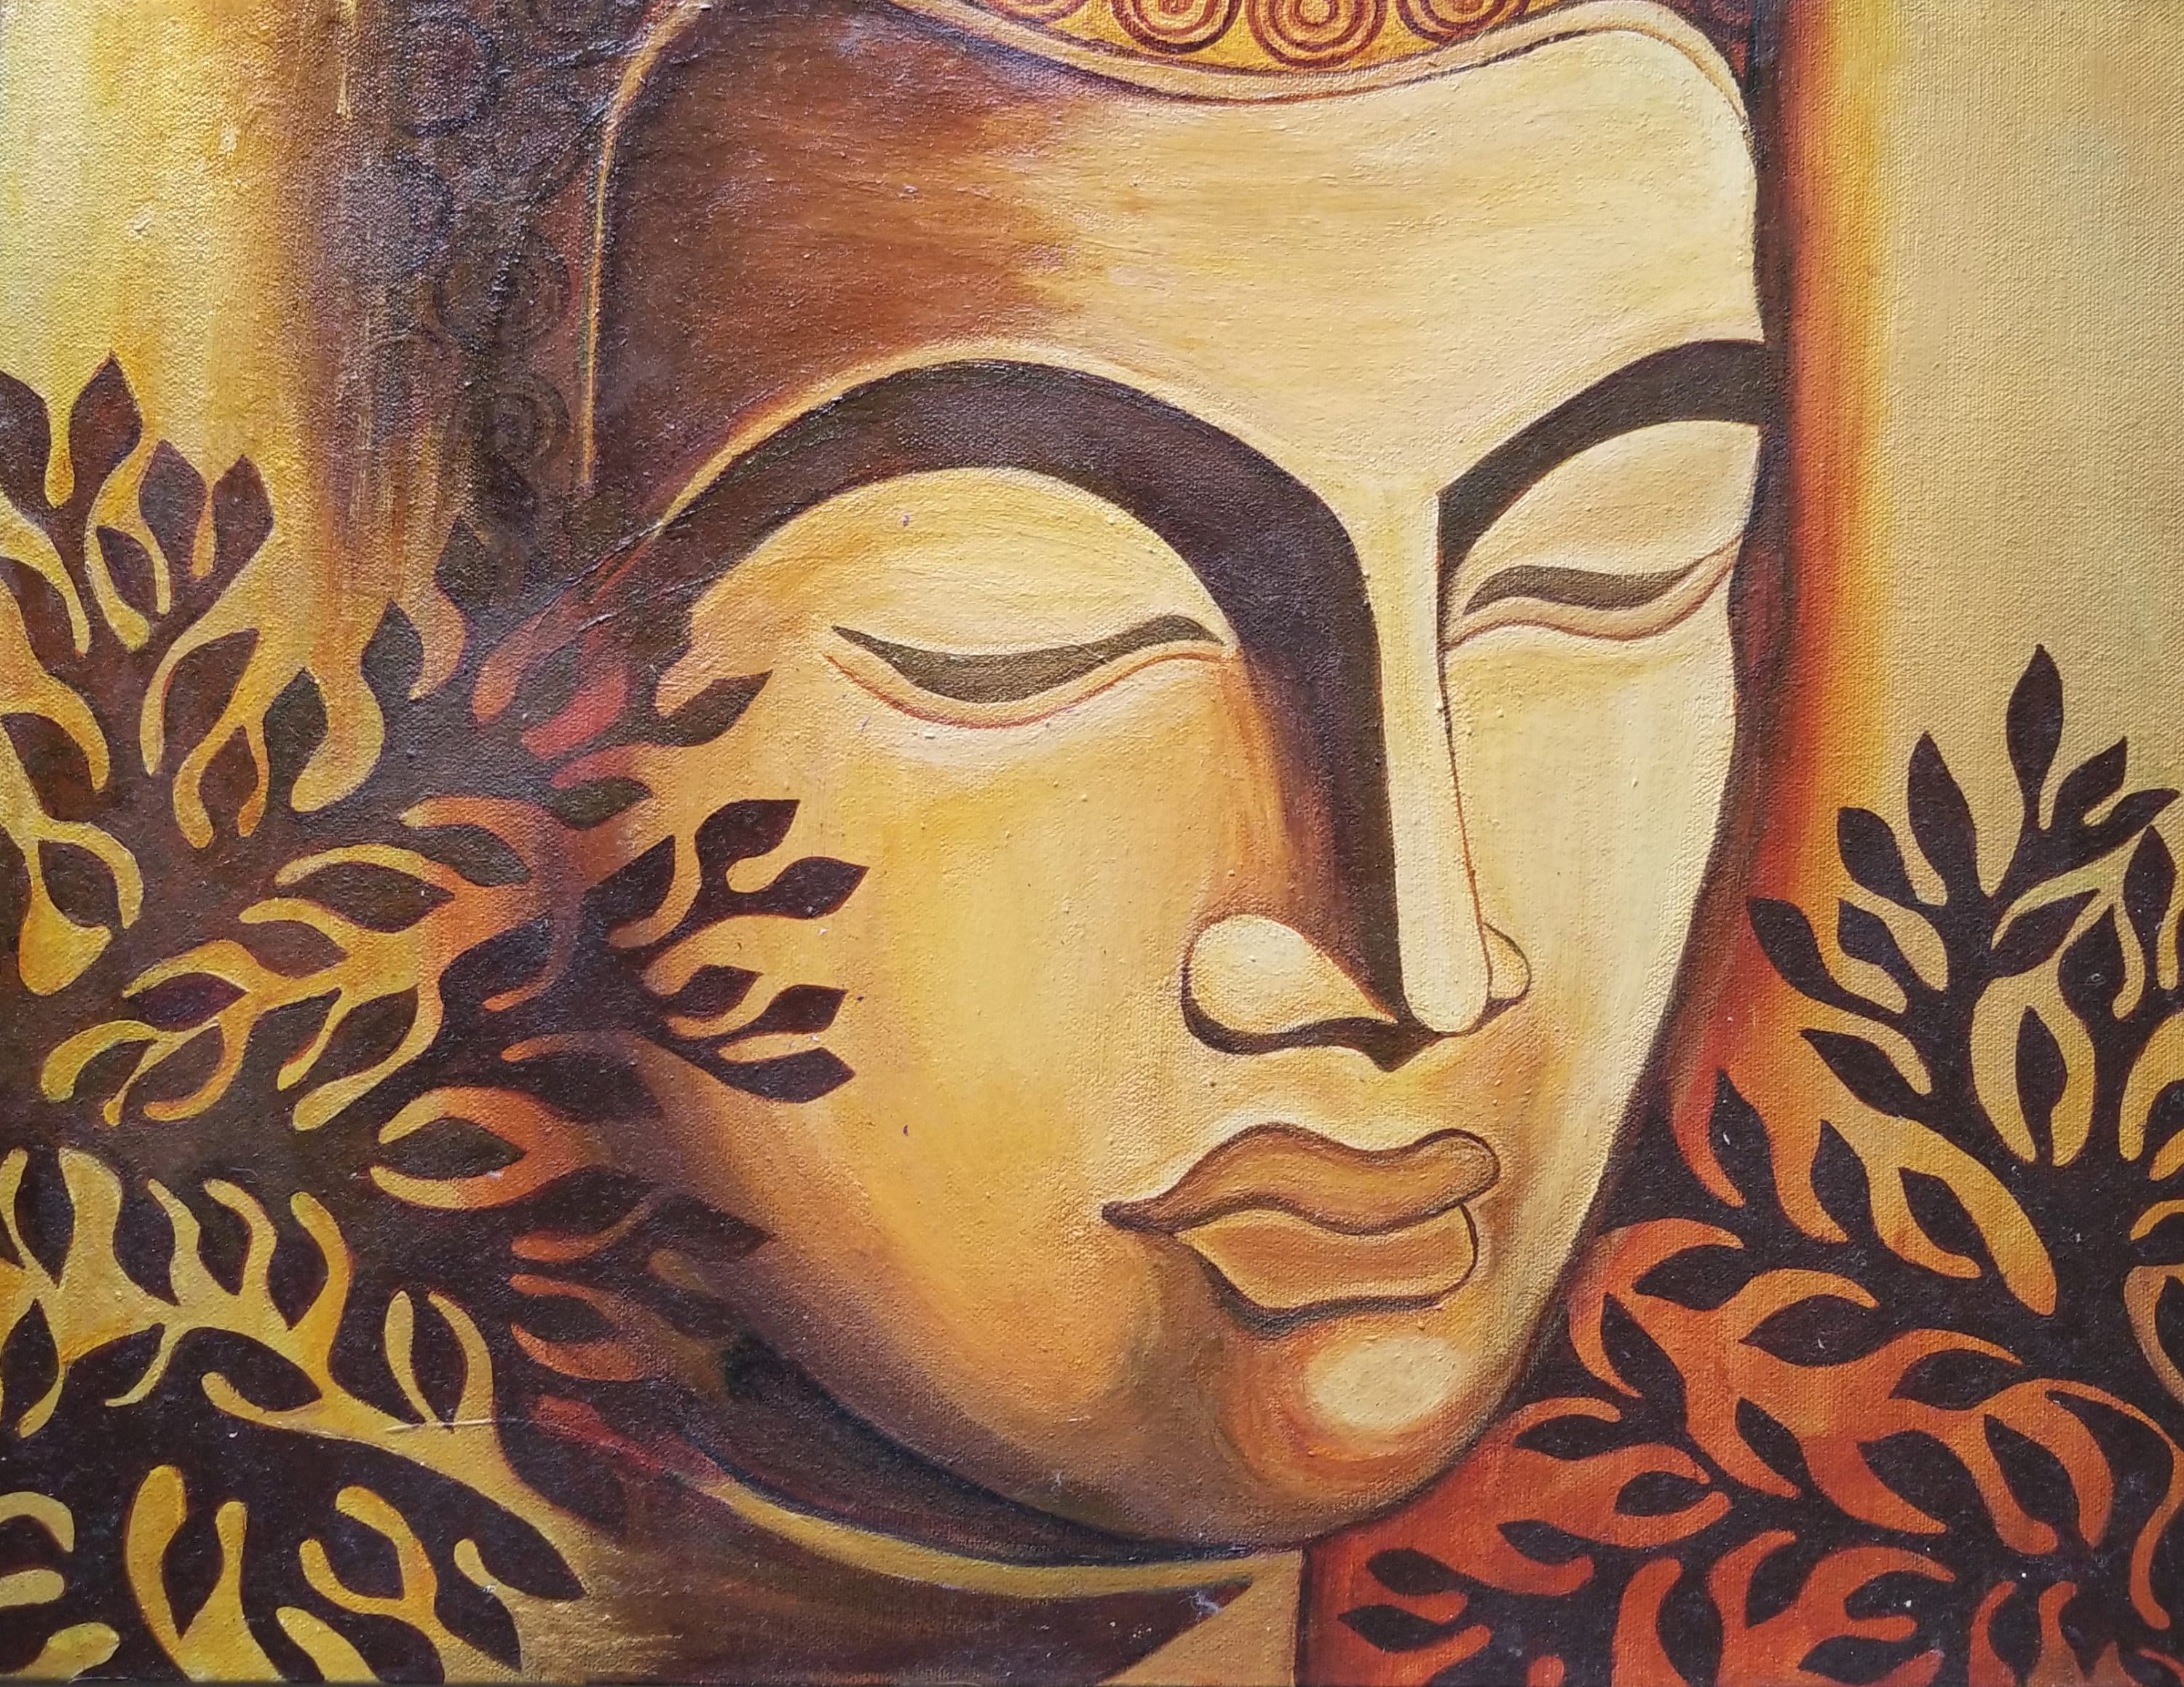 Gautam Buddha Acrylic Painting on Canvas Meditating Buddha | Etsy